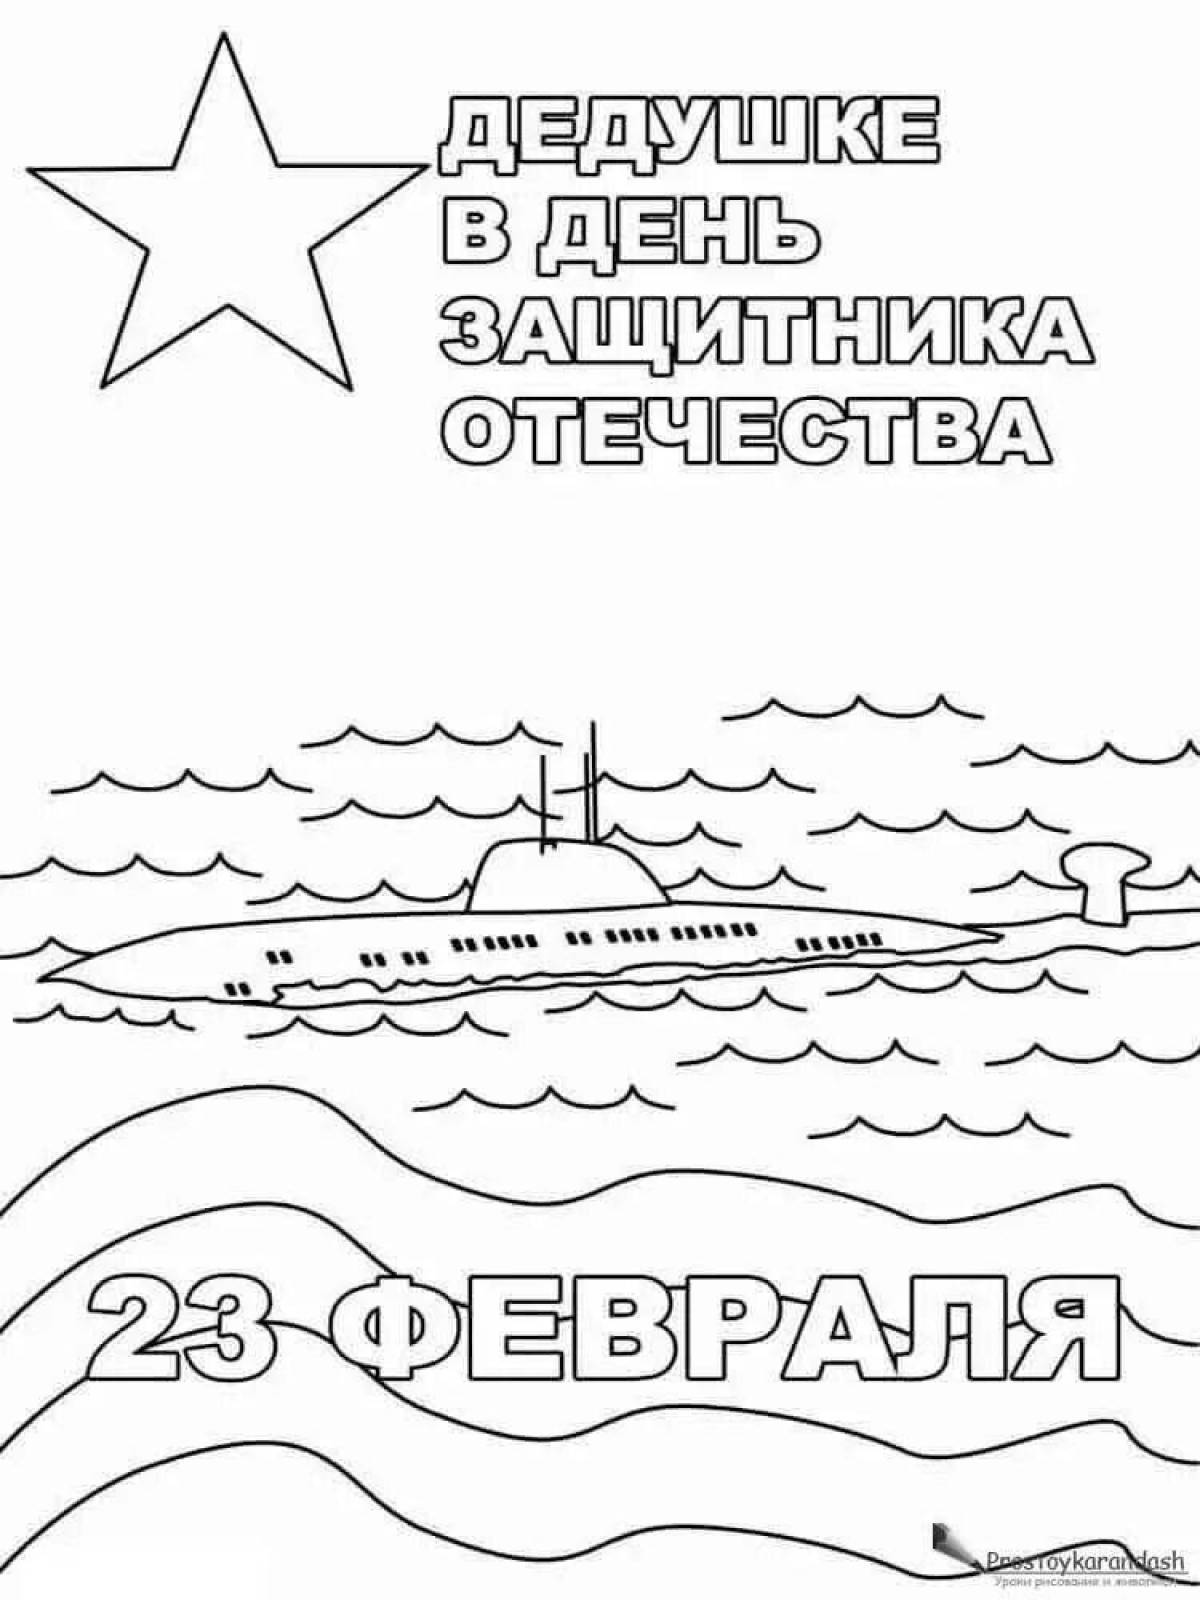 23 февраля день защитника отечества печать #25